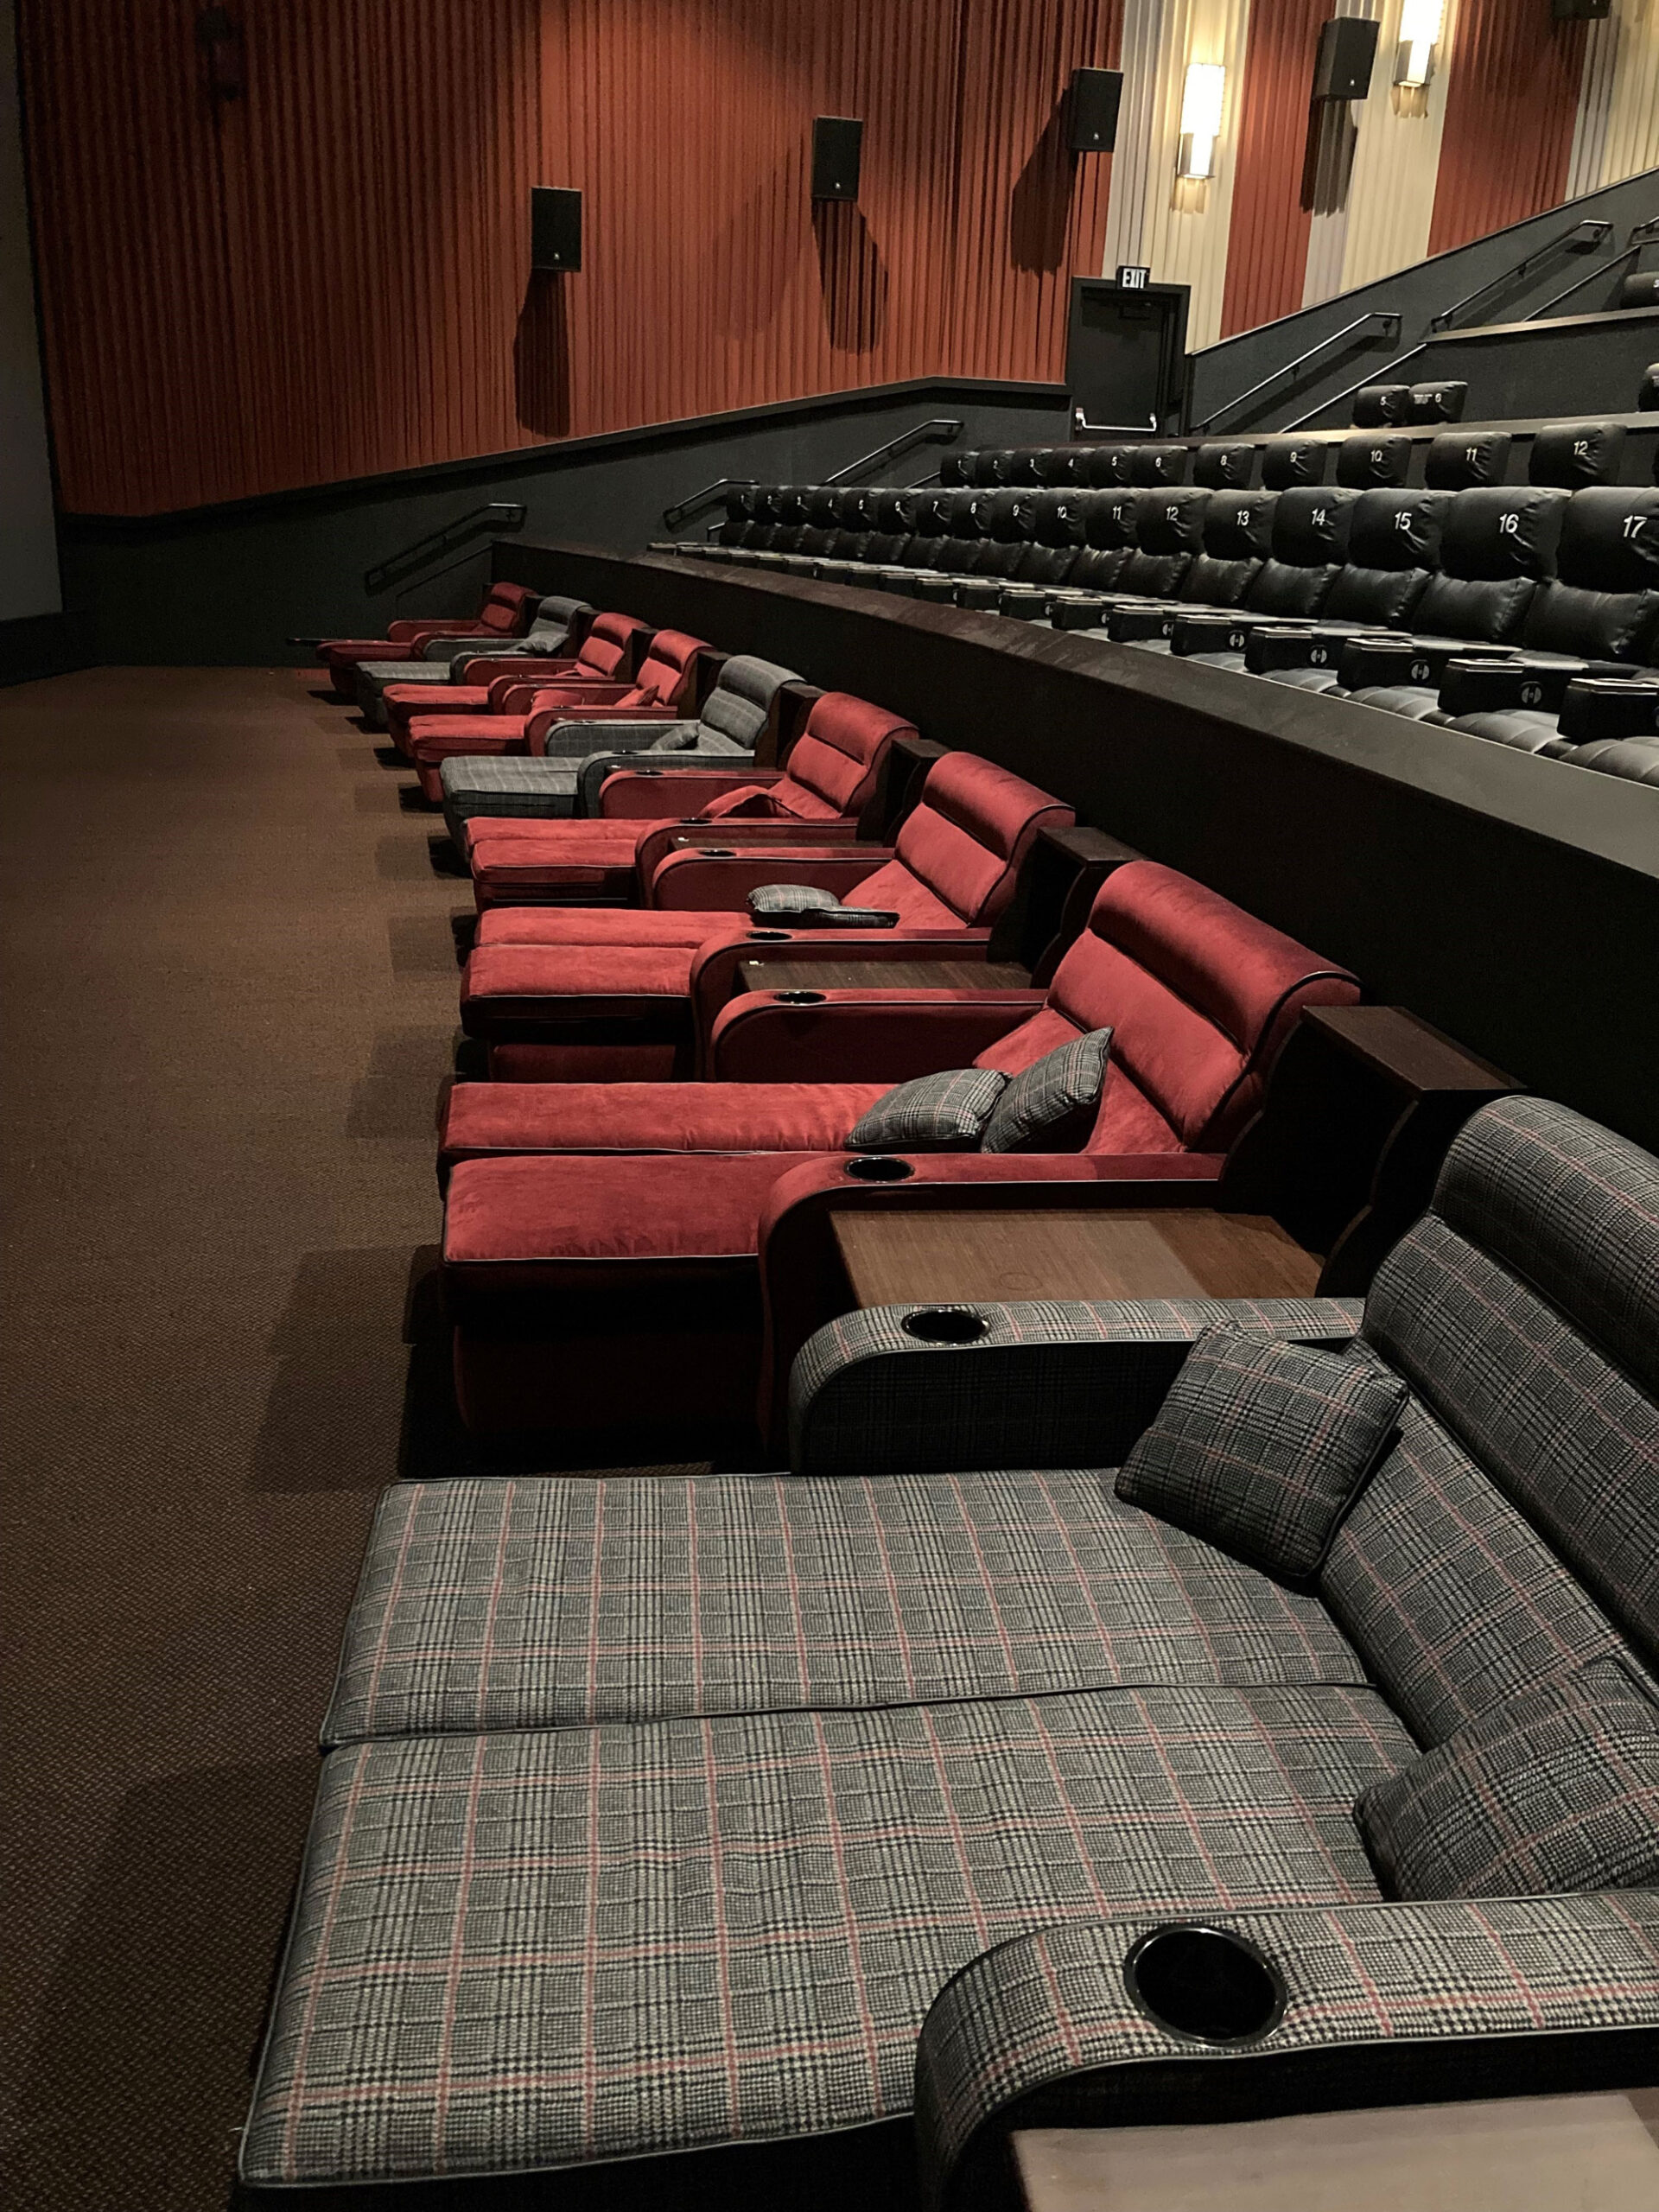 USA Cinema seating